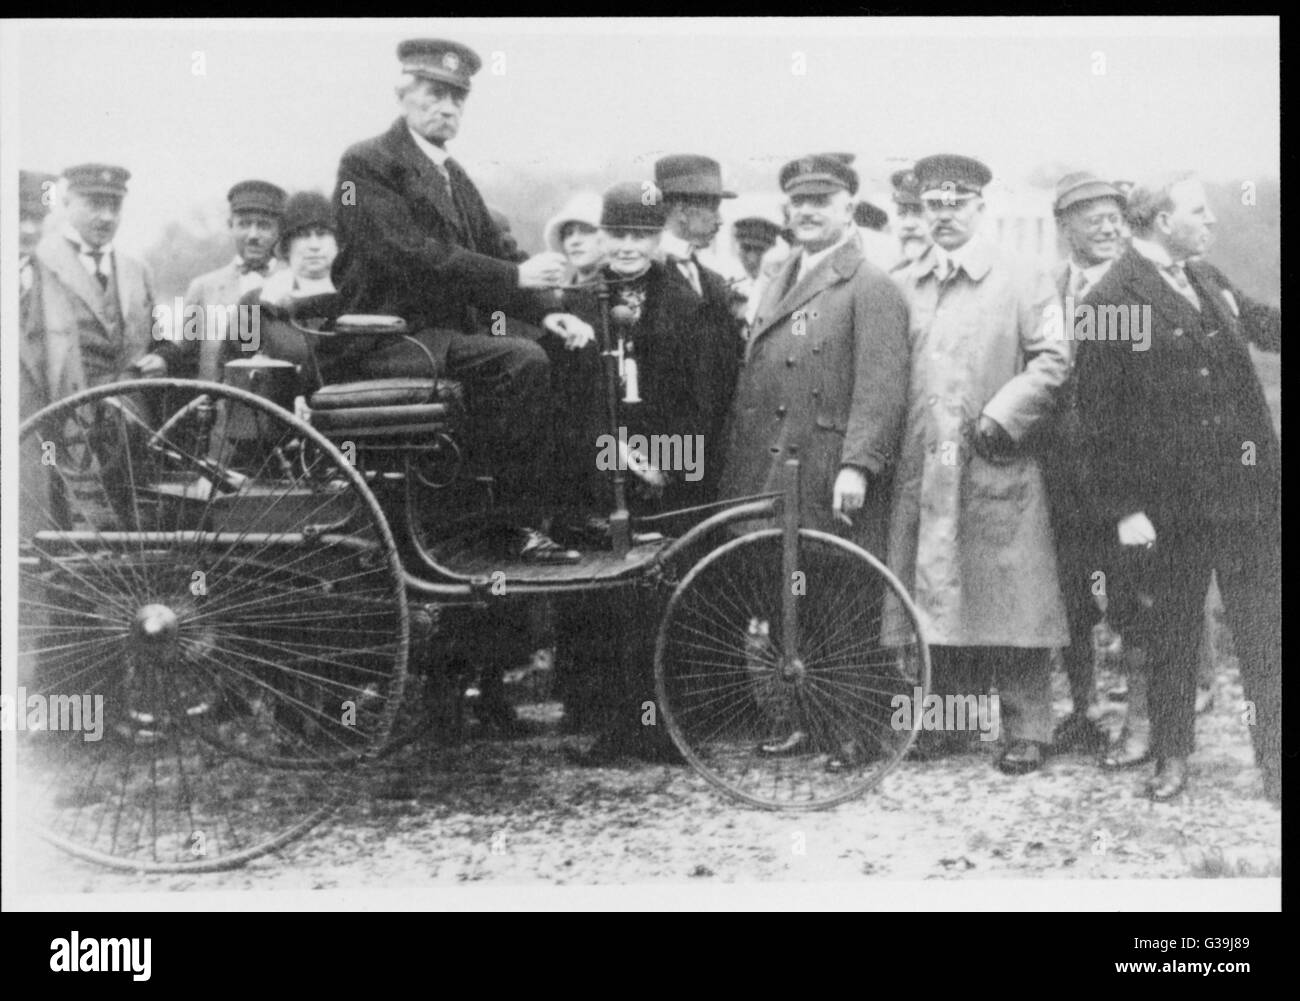 Carl Friedrich Benz, ingegnere tedesco e pioniere nella costruzione di veicoli a motore, con la sua originale autovettura a Monaco di Baviera nel 1925 Data: 1893 Foto Stock